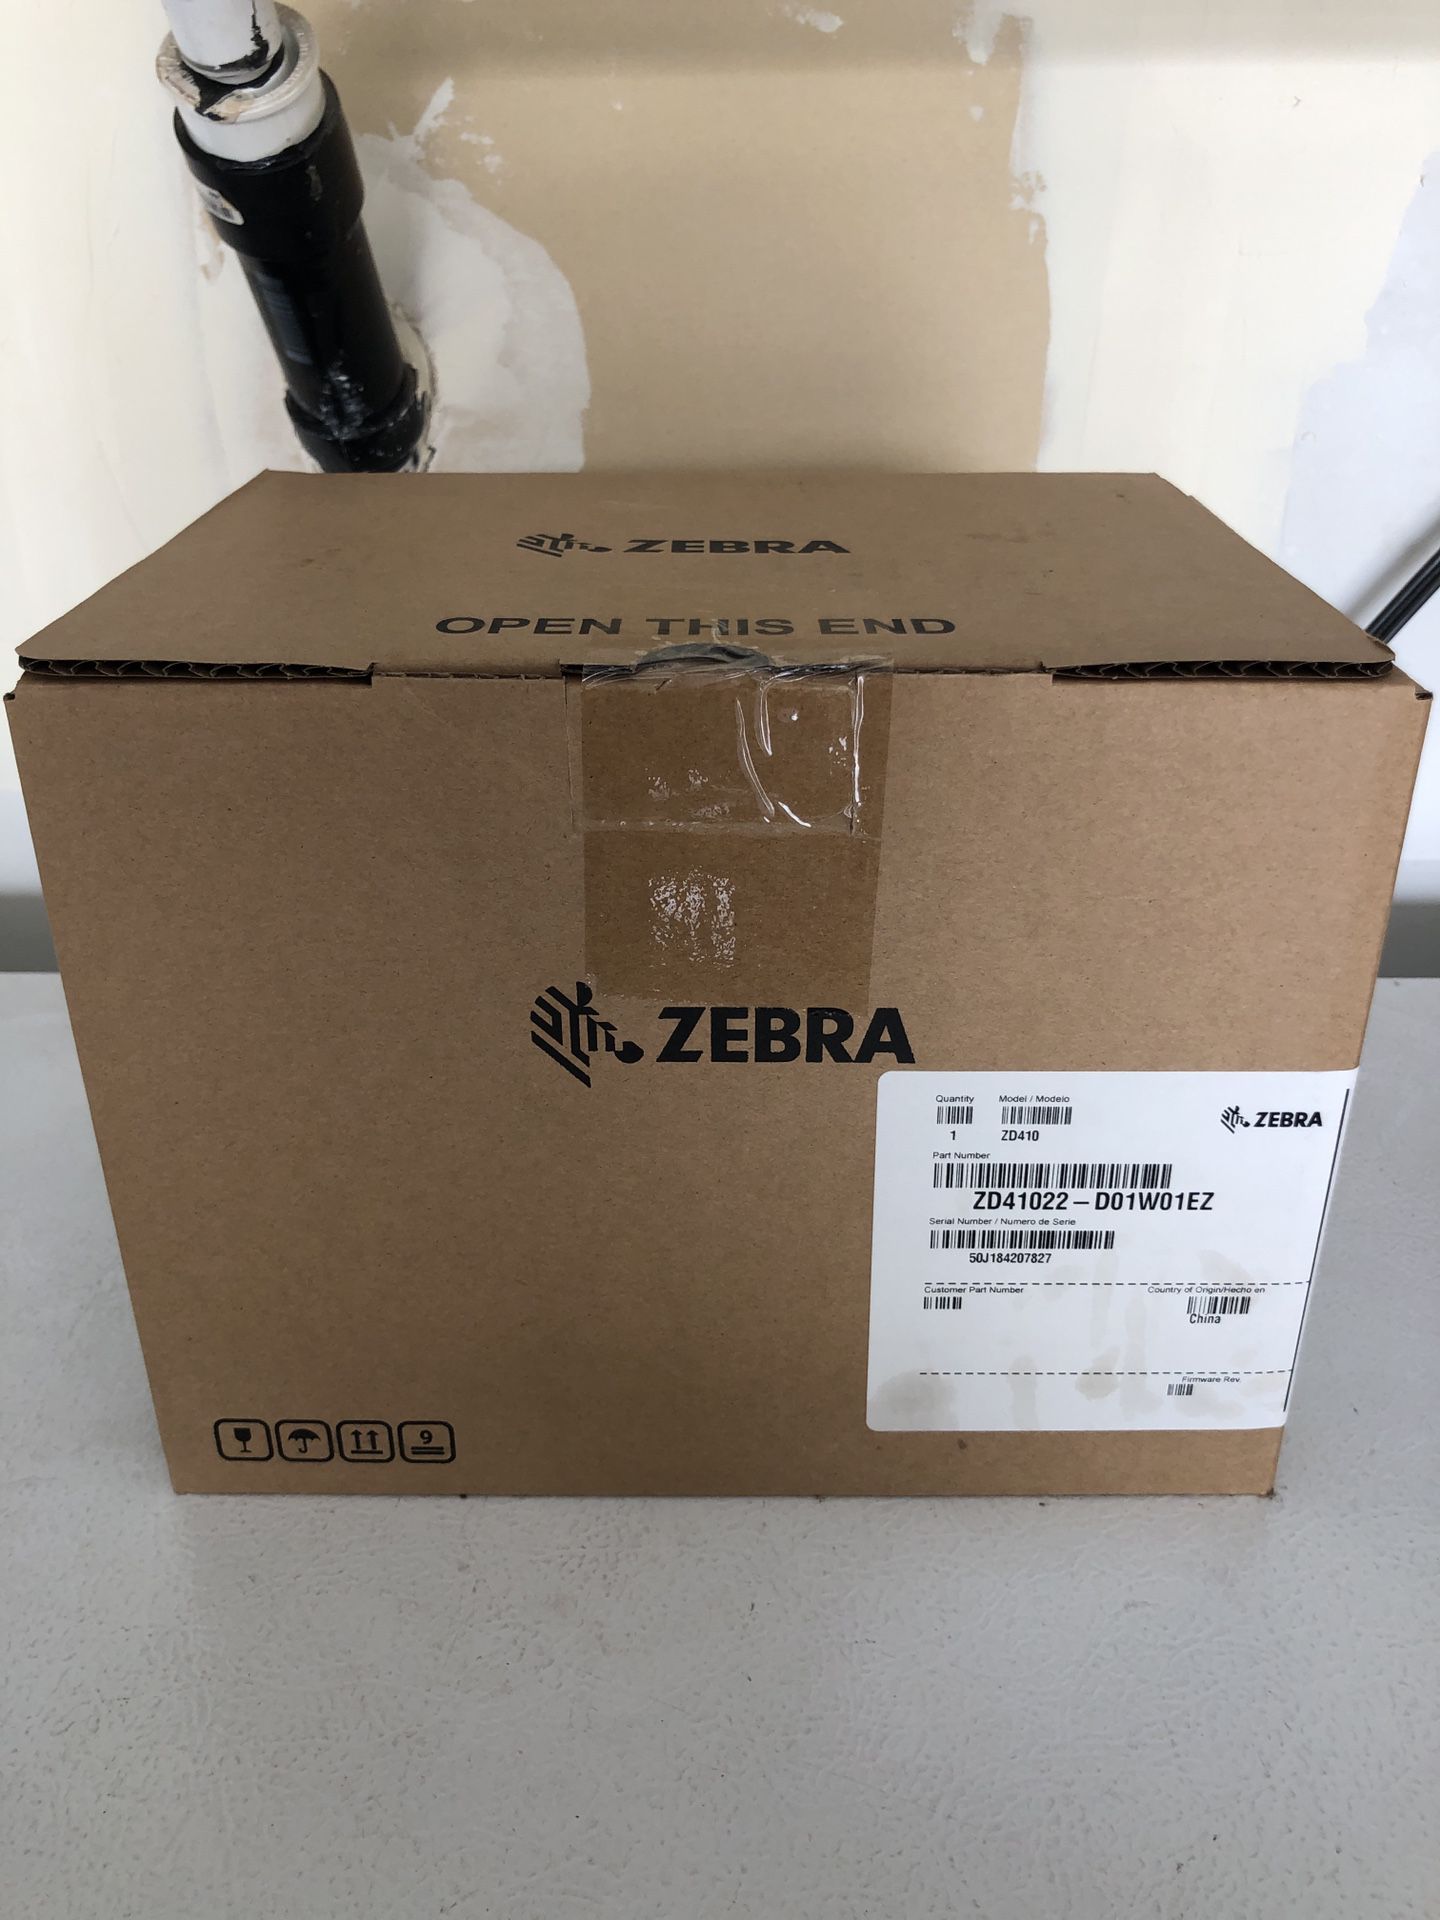 Zebra ZD410 Thermal Printer